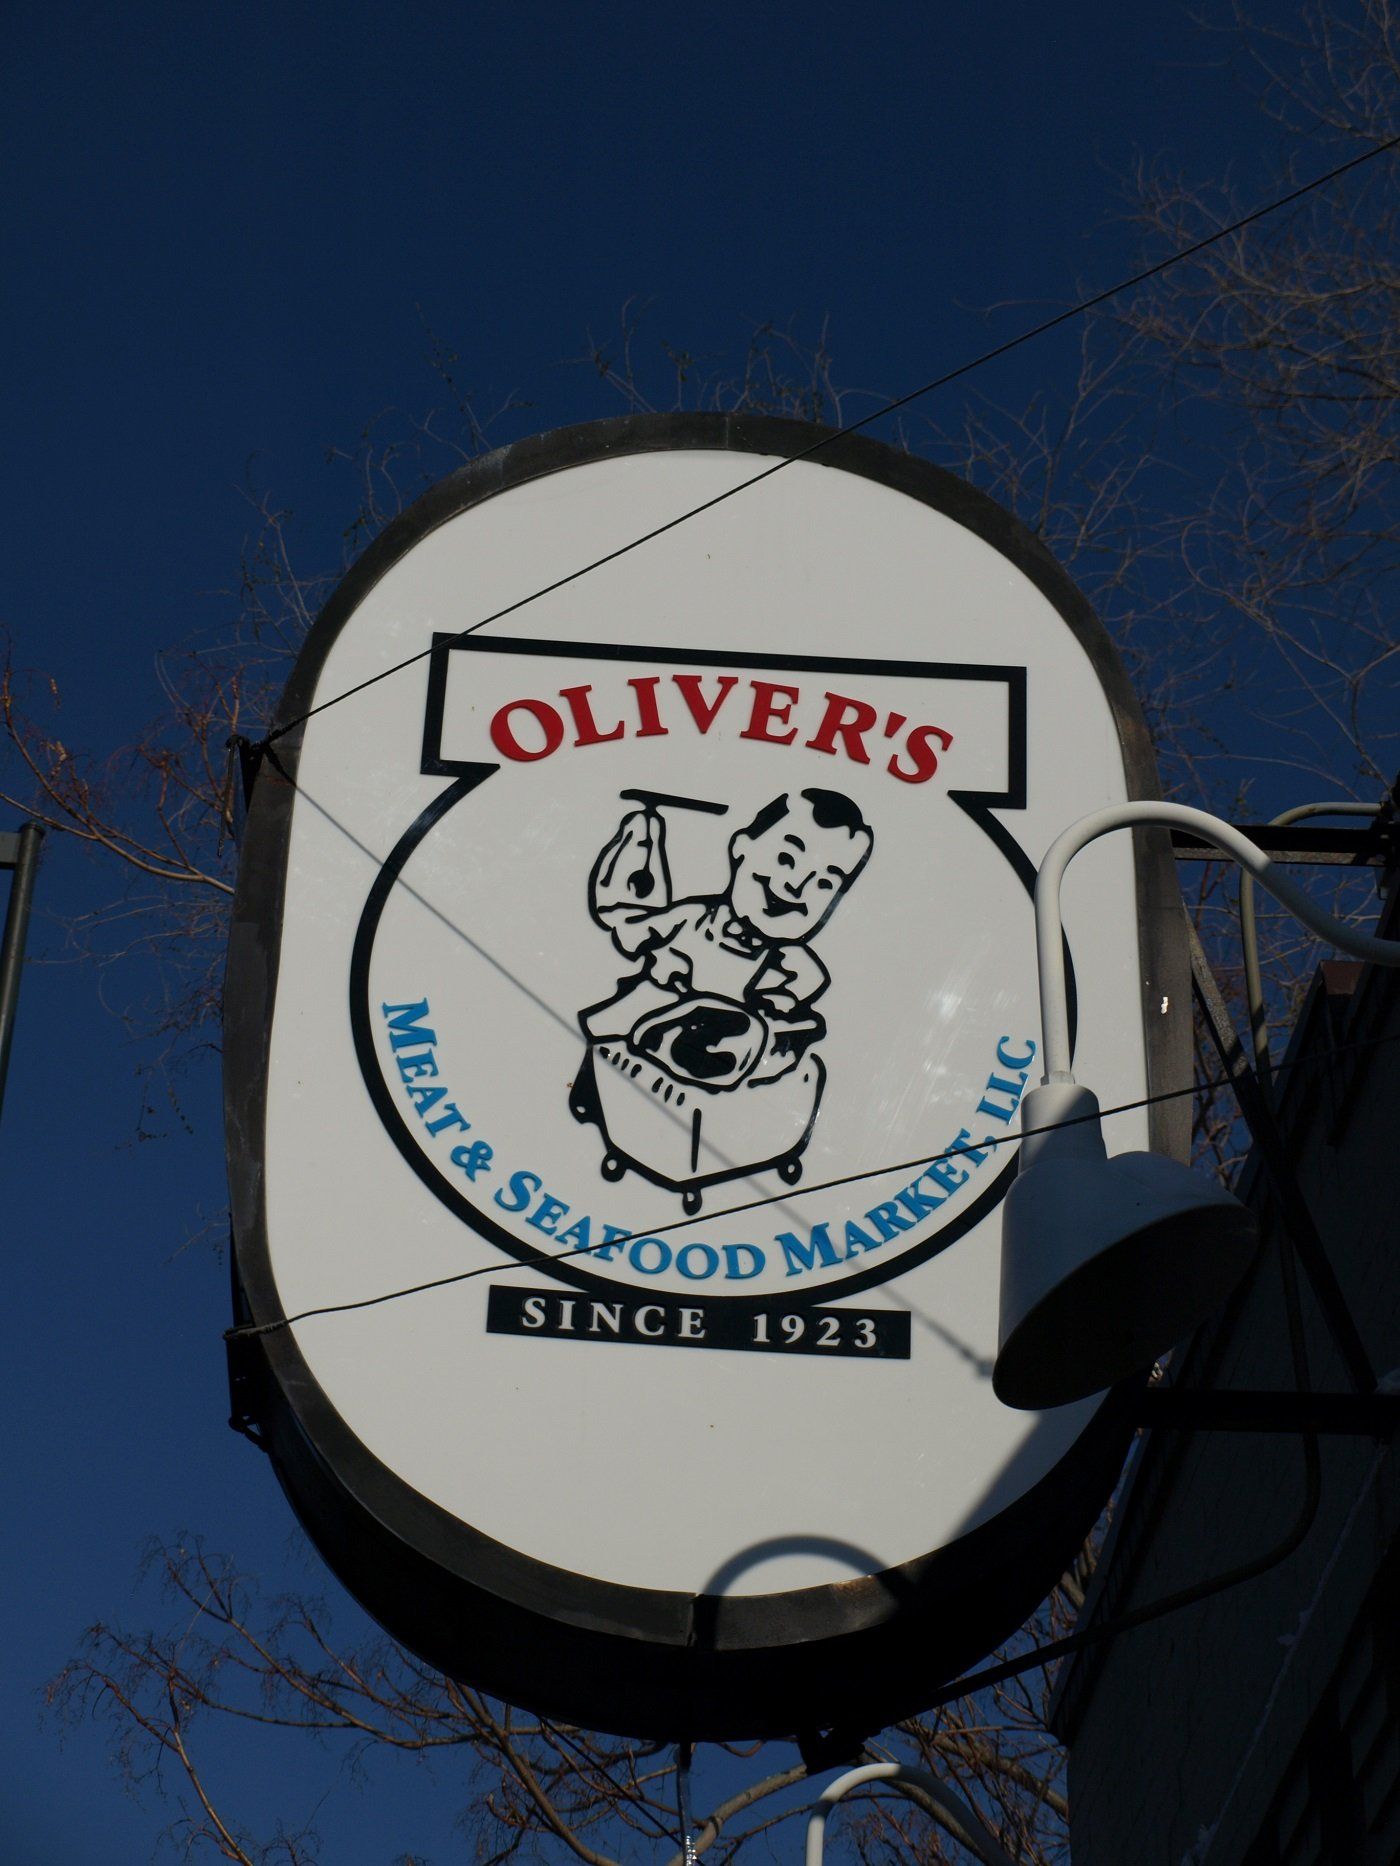 Premiere Meat Market- Oliver's Meat Market in Denver, Colorado